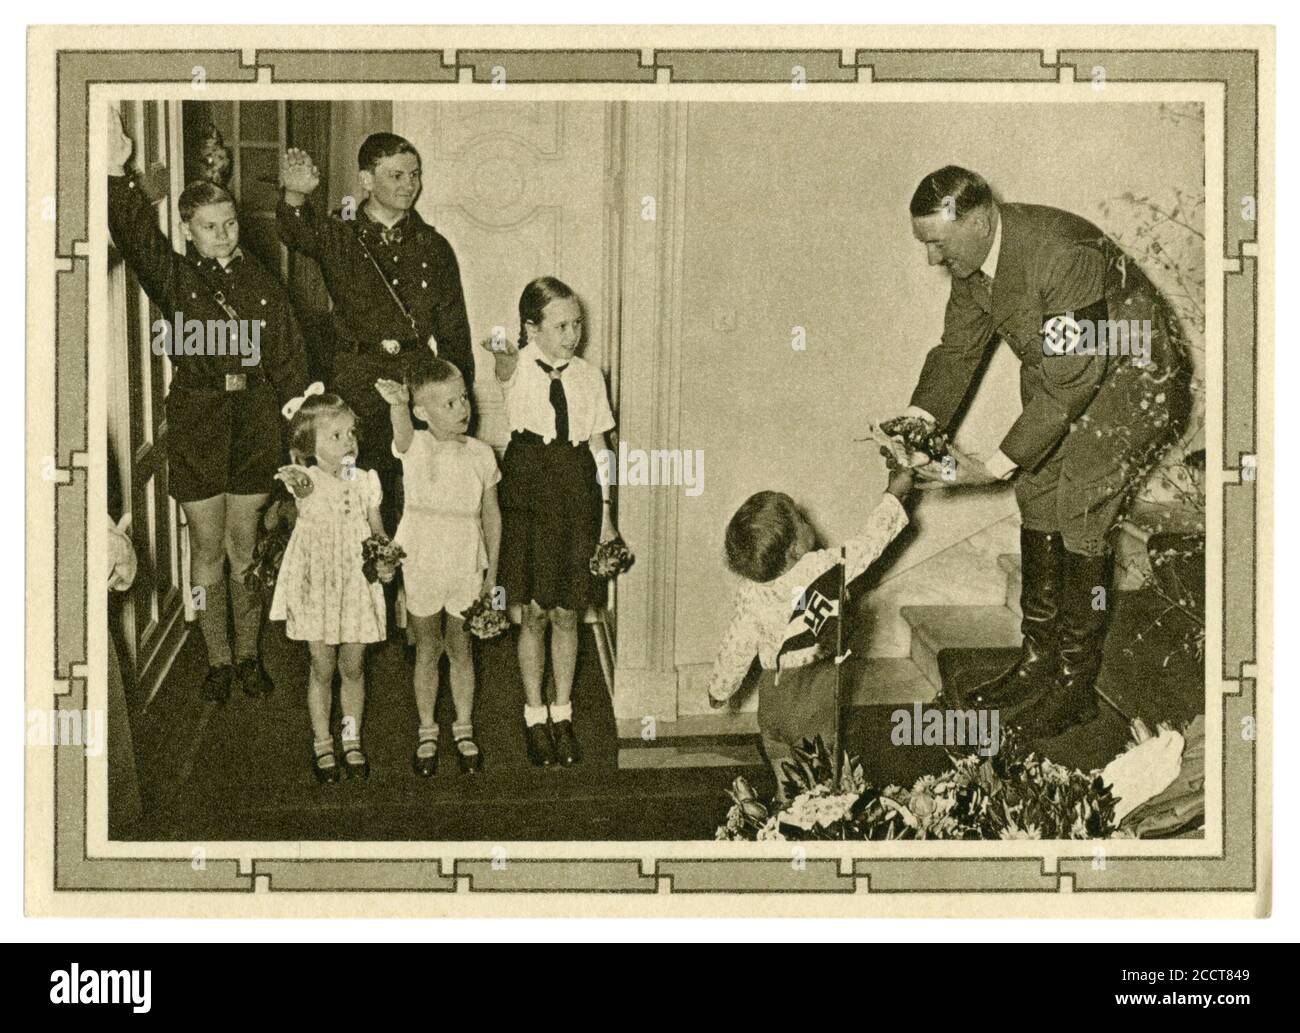 Cartolina storica tedesca: Il 50° compleanno di Adolf Hitler. Riceve un bouquet di fiori dal più giovane dei 6 figli di Goebbels, Germania, 1939 Foto Stock